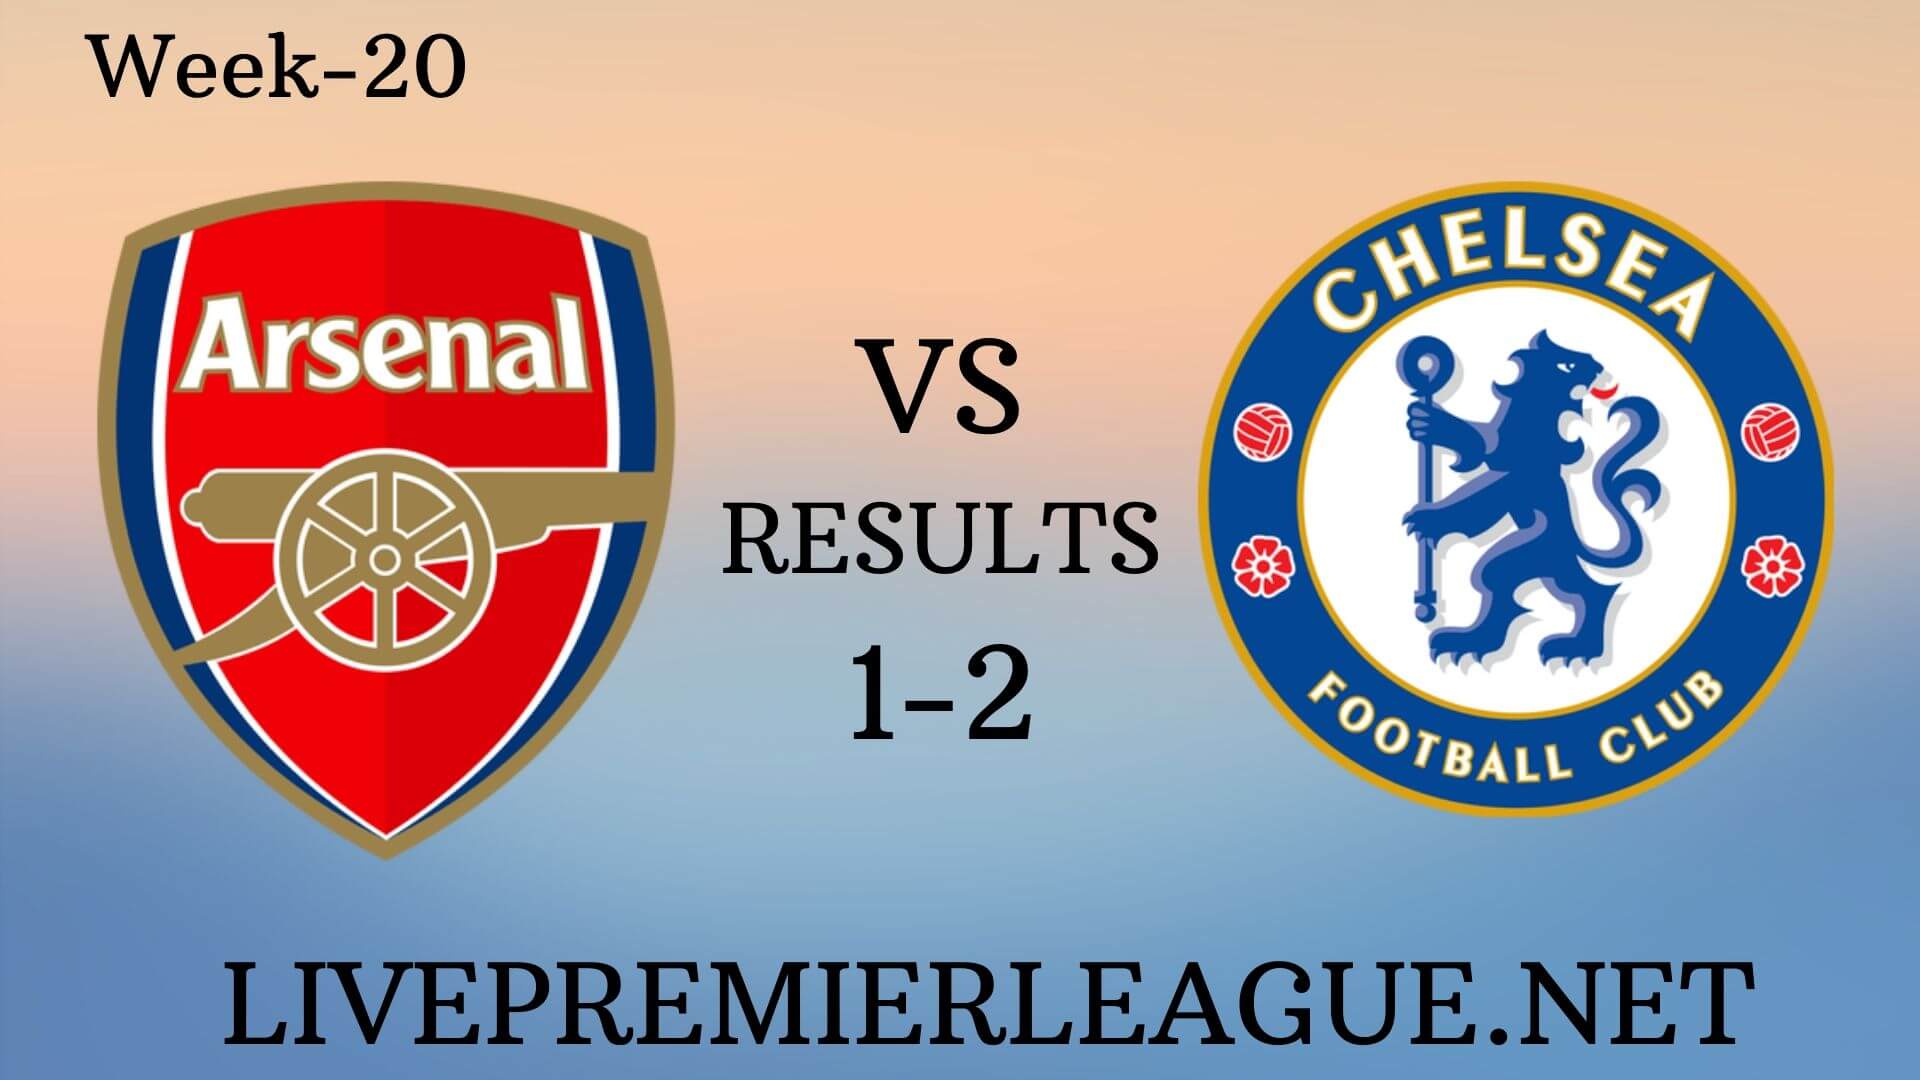 Arsenal Vs Chelsea | Week 20 Results 2019